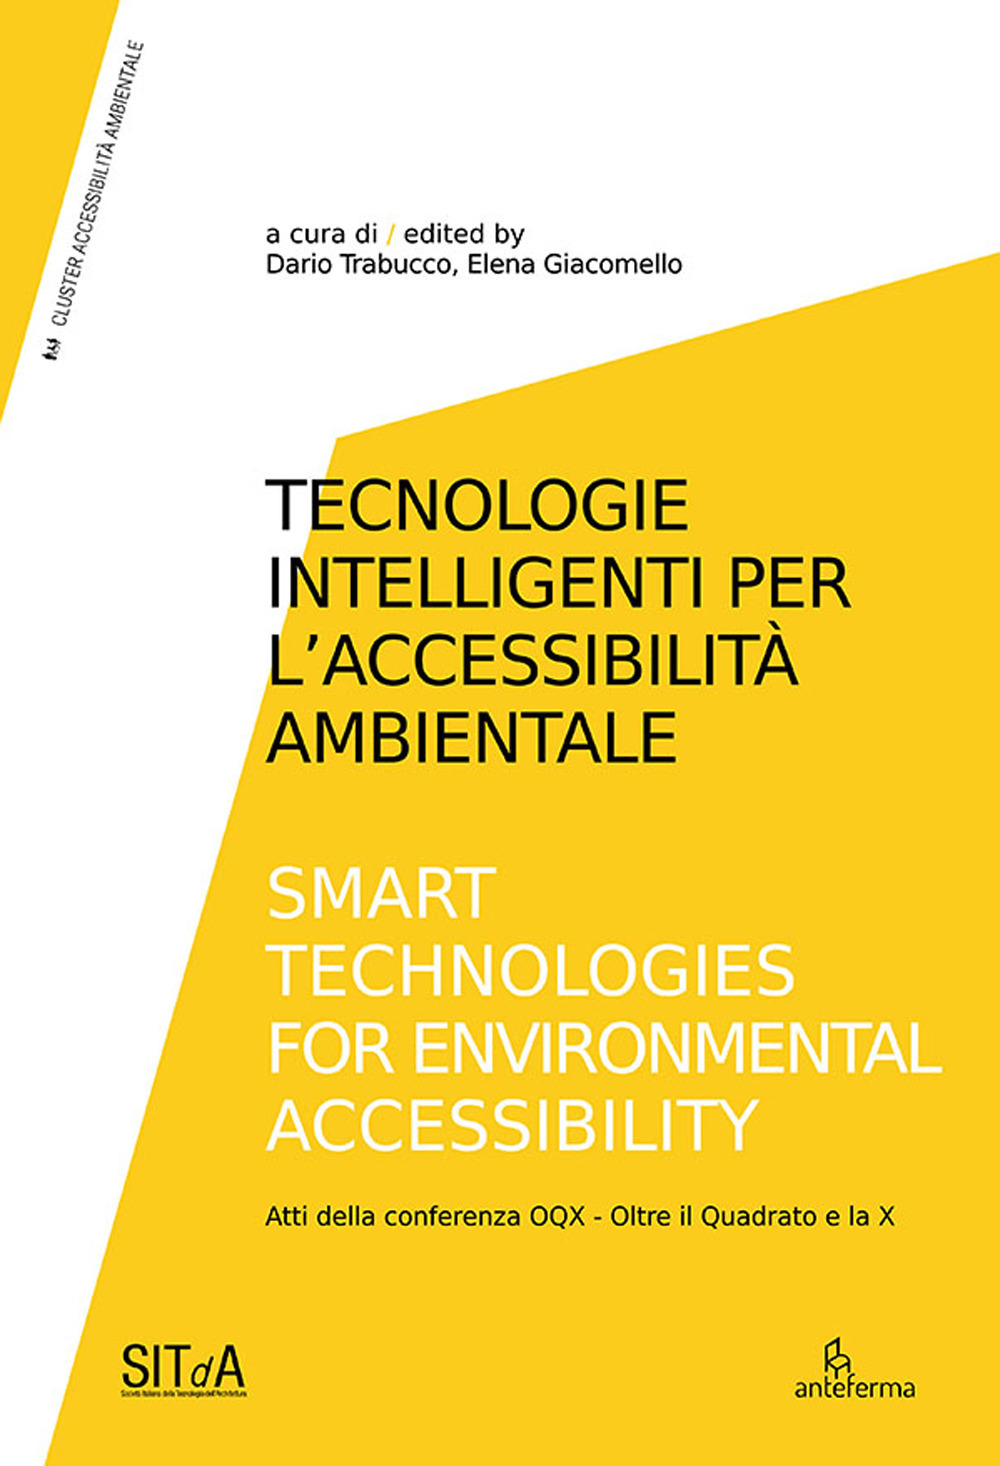 Tecnologie intelligenti per l'accessibilità ambientale-Smart technologies for environmental accessibility